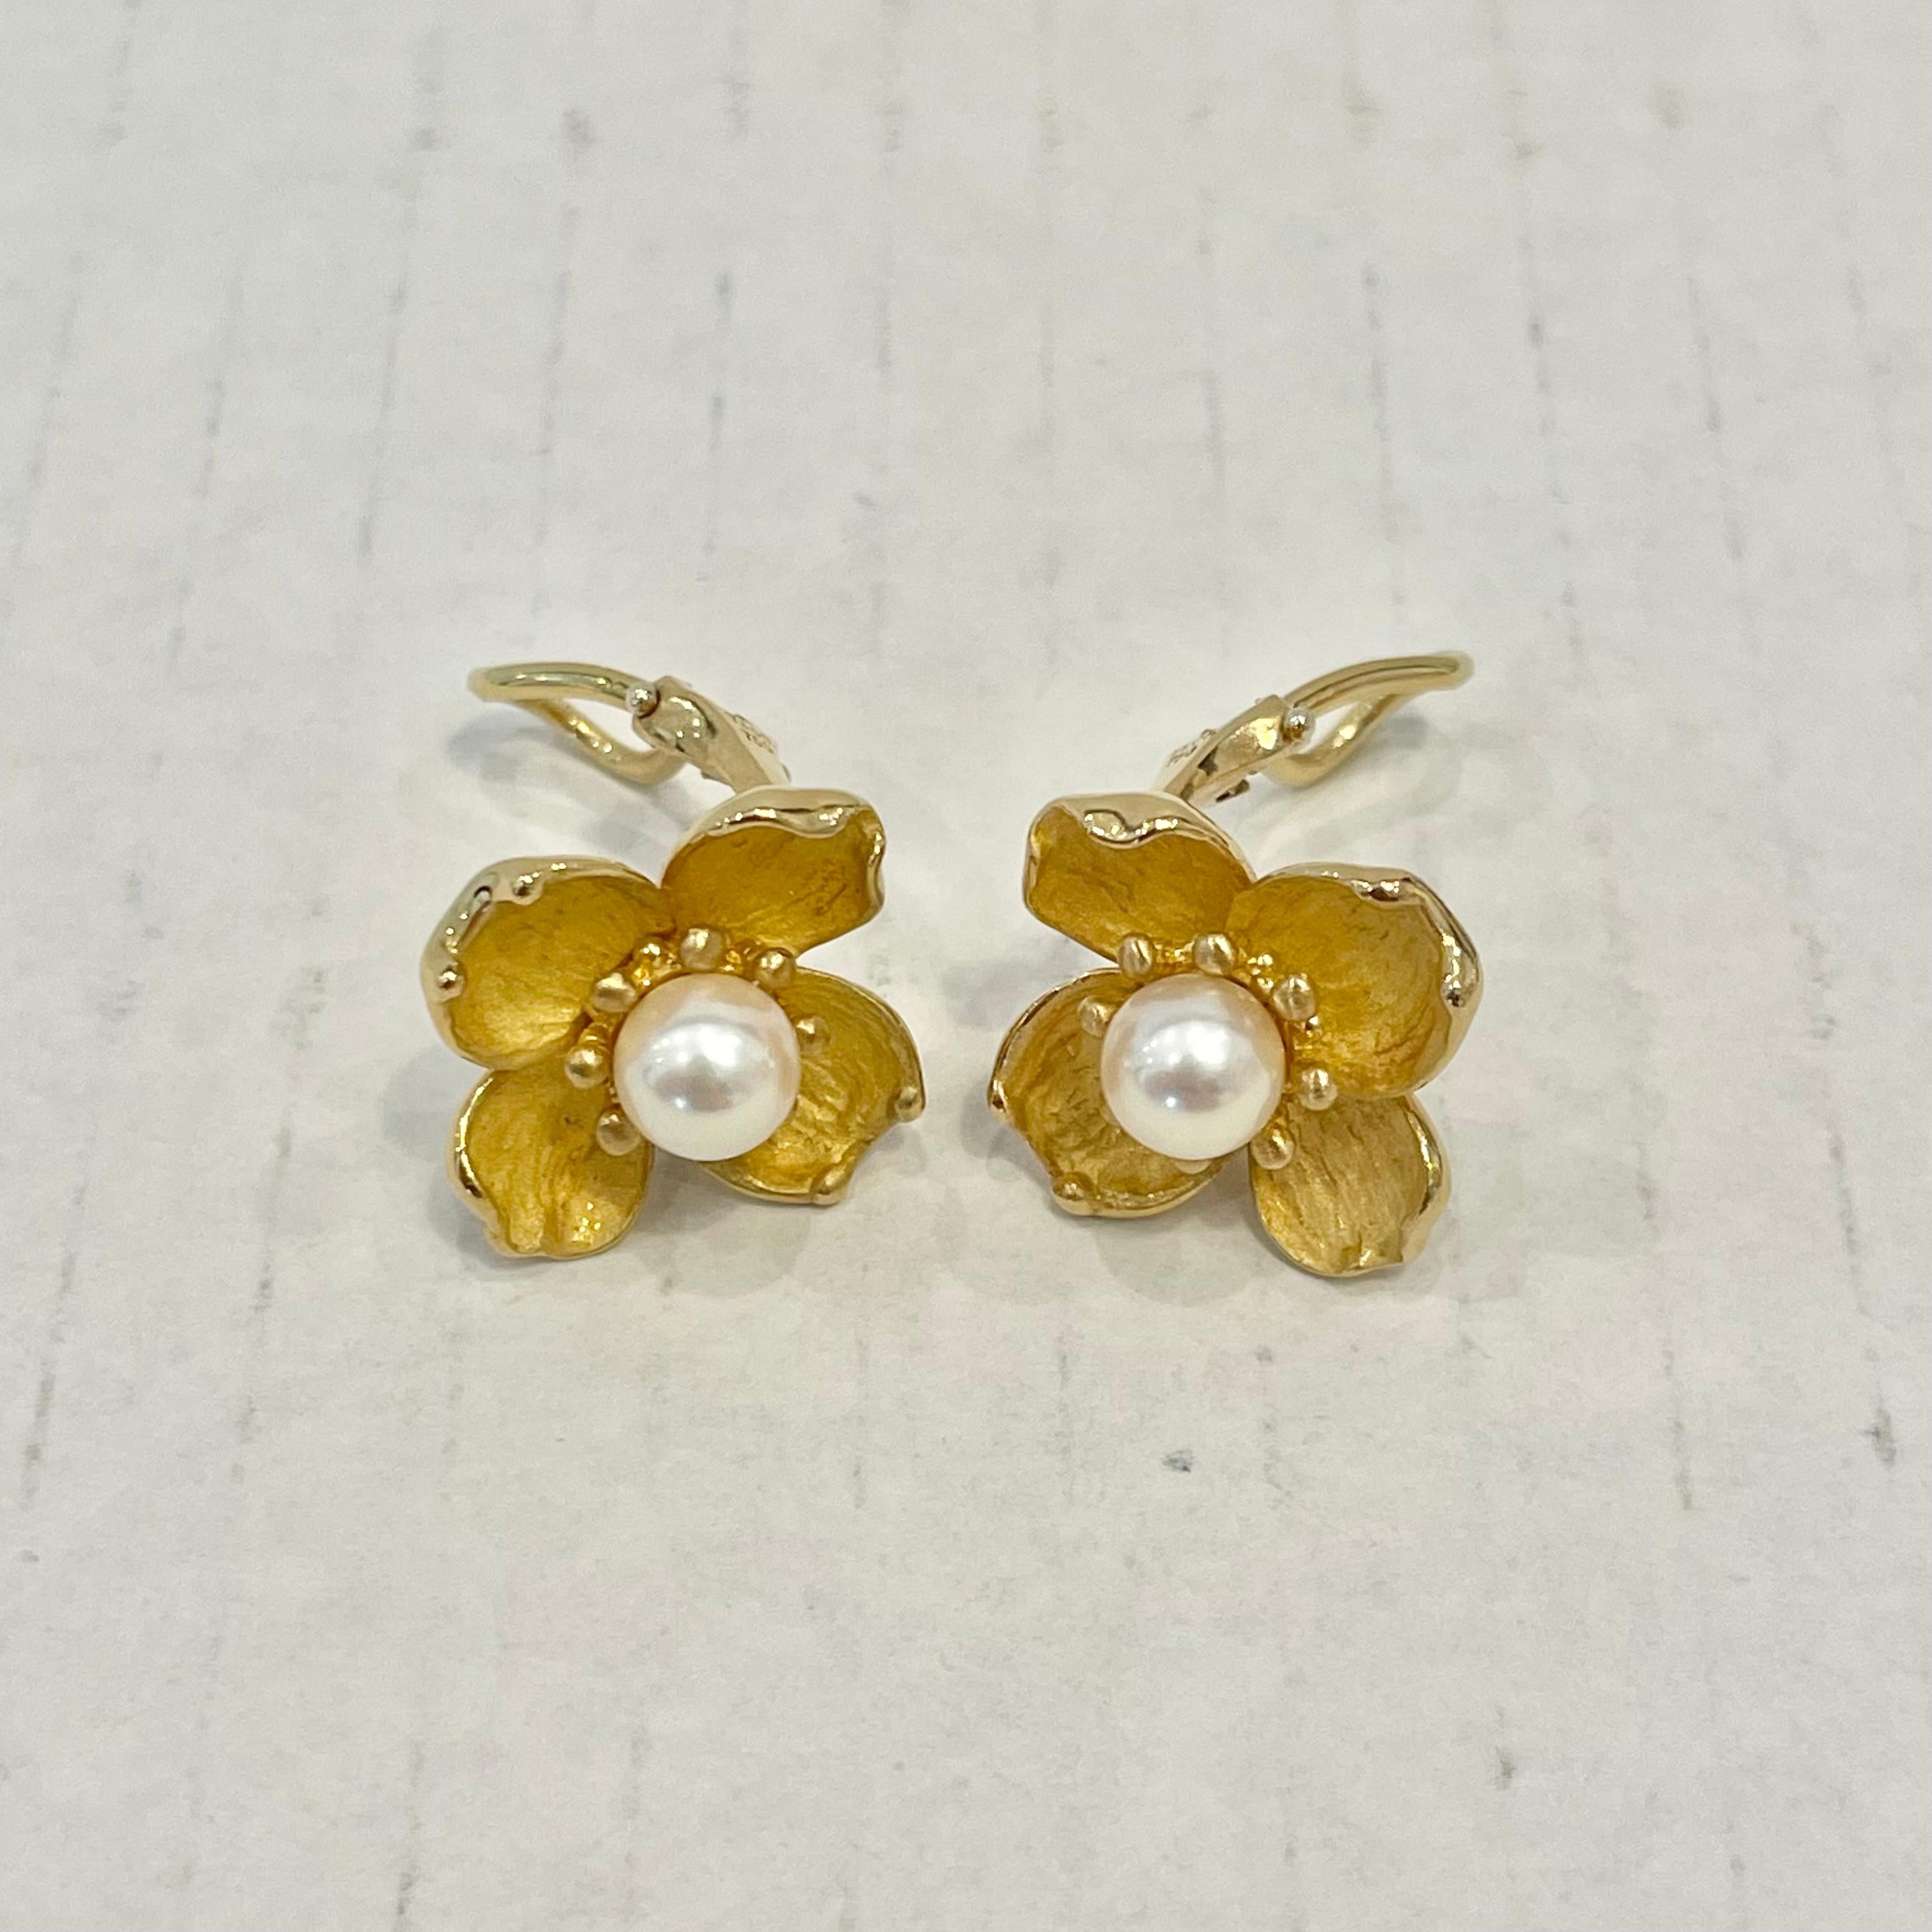 Tiffany & Co. Dogwood & Pearl Earrings in 18 Karat Yellow Gold For Sale 3